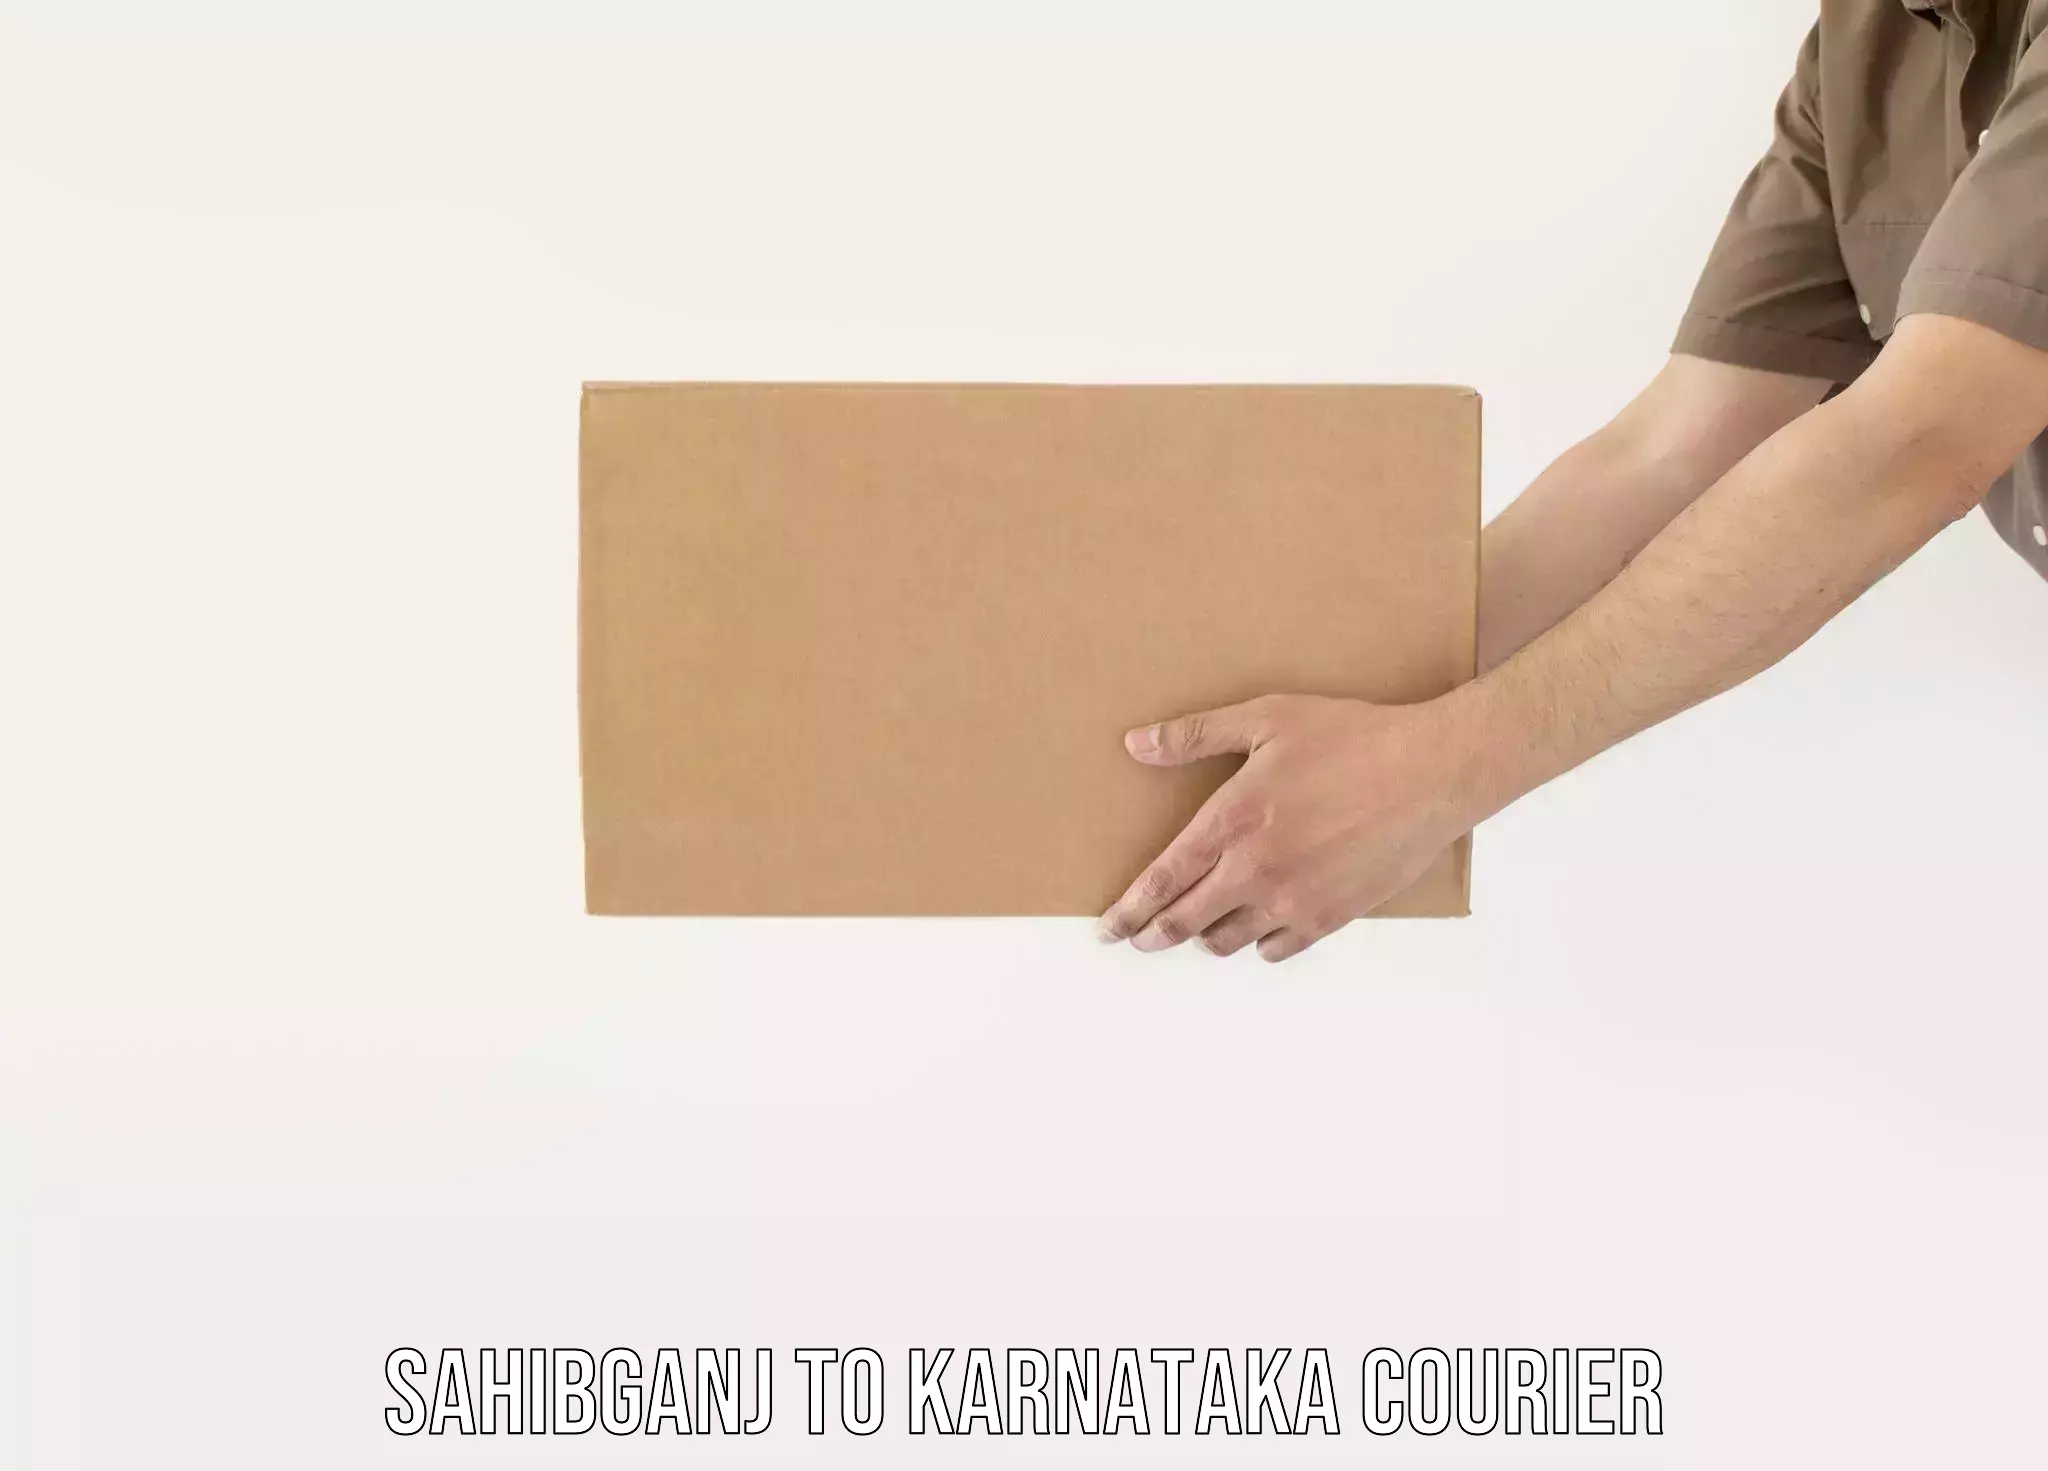 High-capacity parcel service Sahibganj to Karnataka